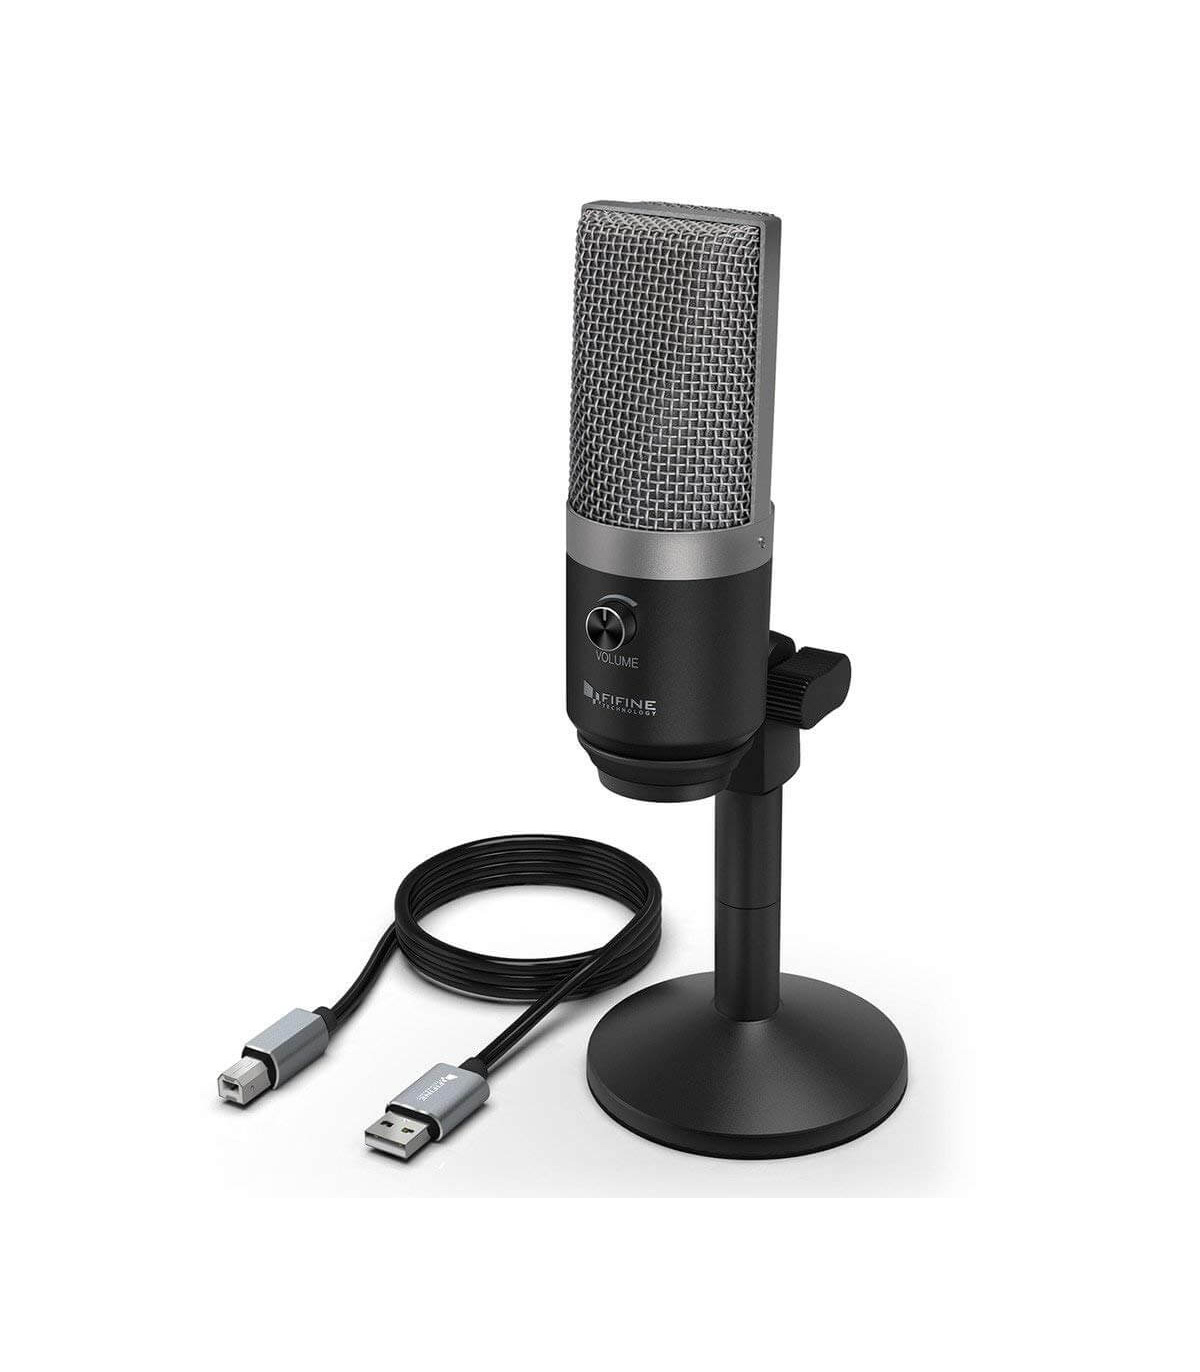 Microfon FIFINE PC USB pentru computer, Microfon condensator optimizat pentru inregistrare si streaming accesorii pret redus imagine 2022